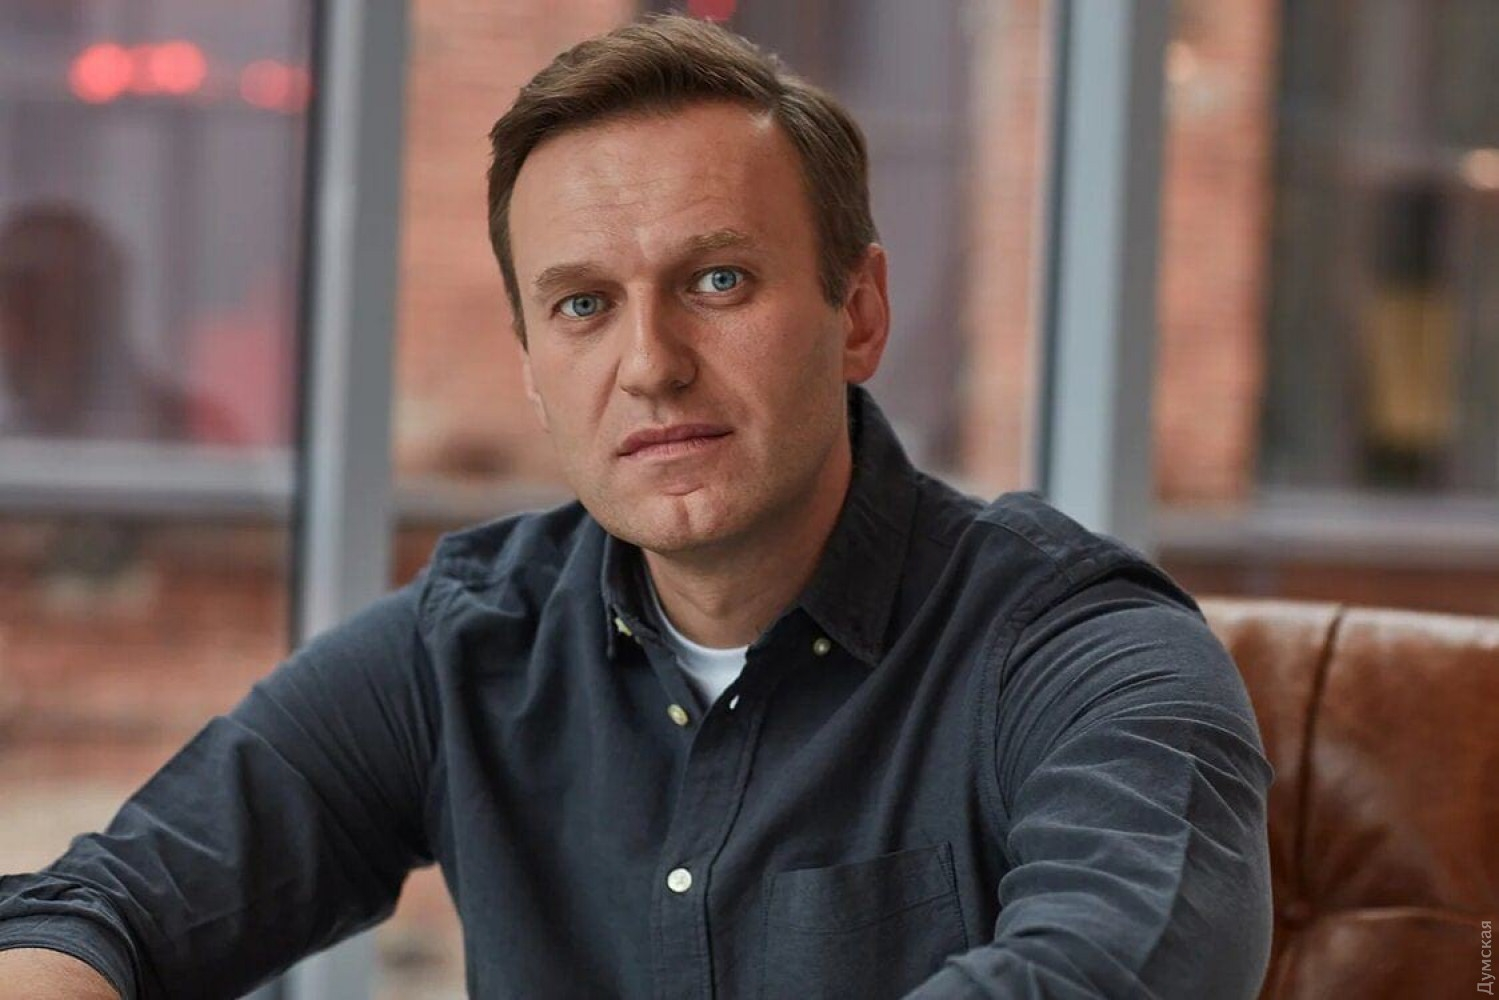 Навальный Алексей Анатольевич: от сына военного до оппозиционера